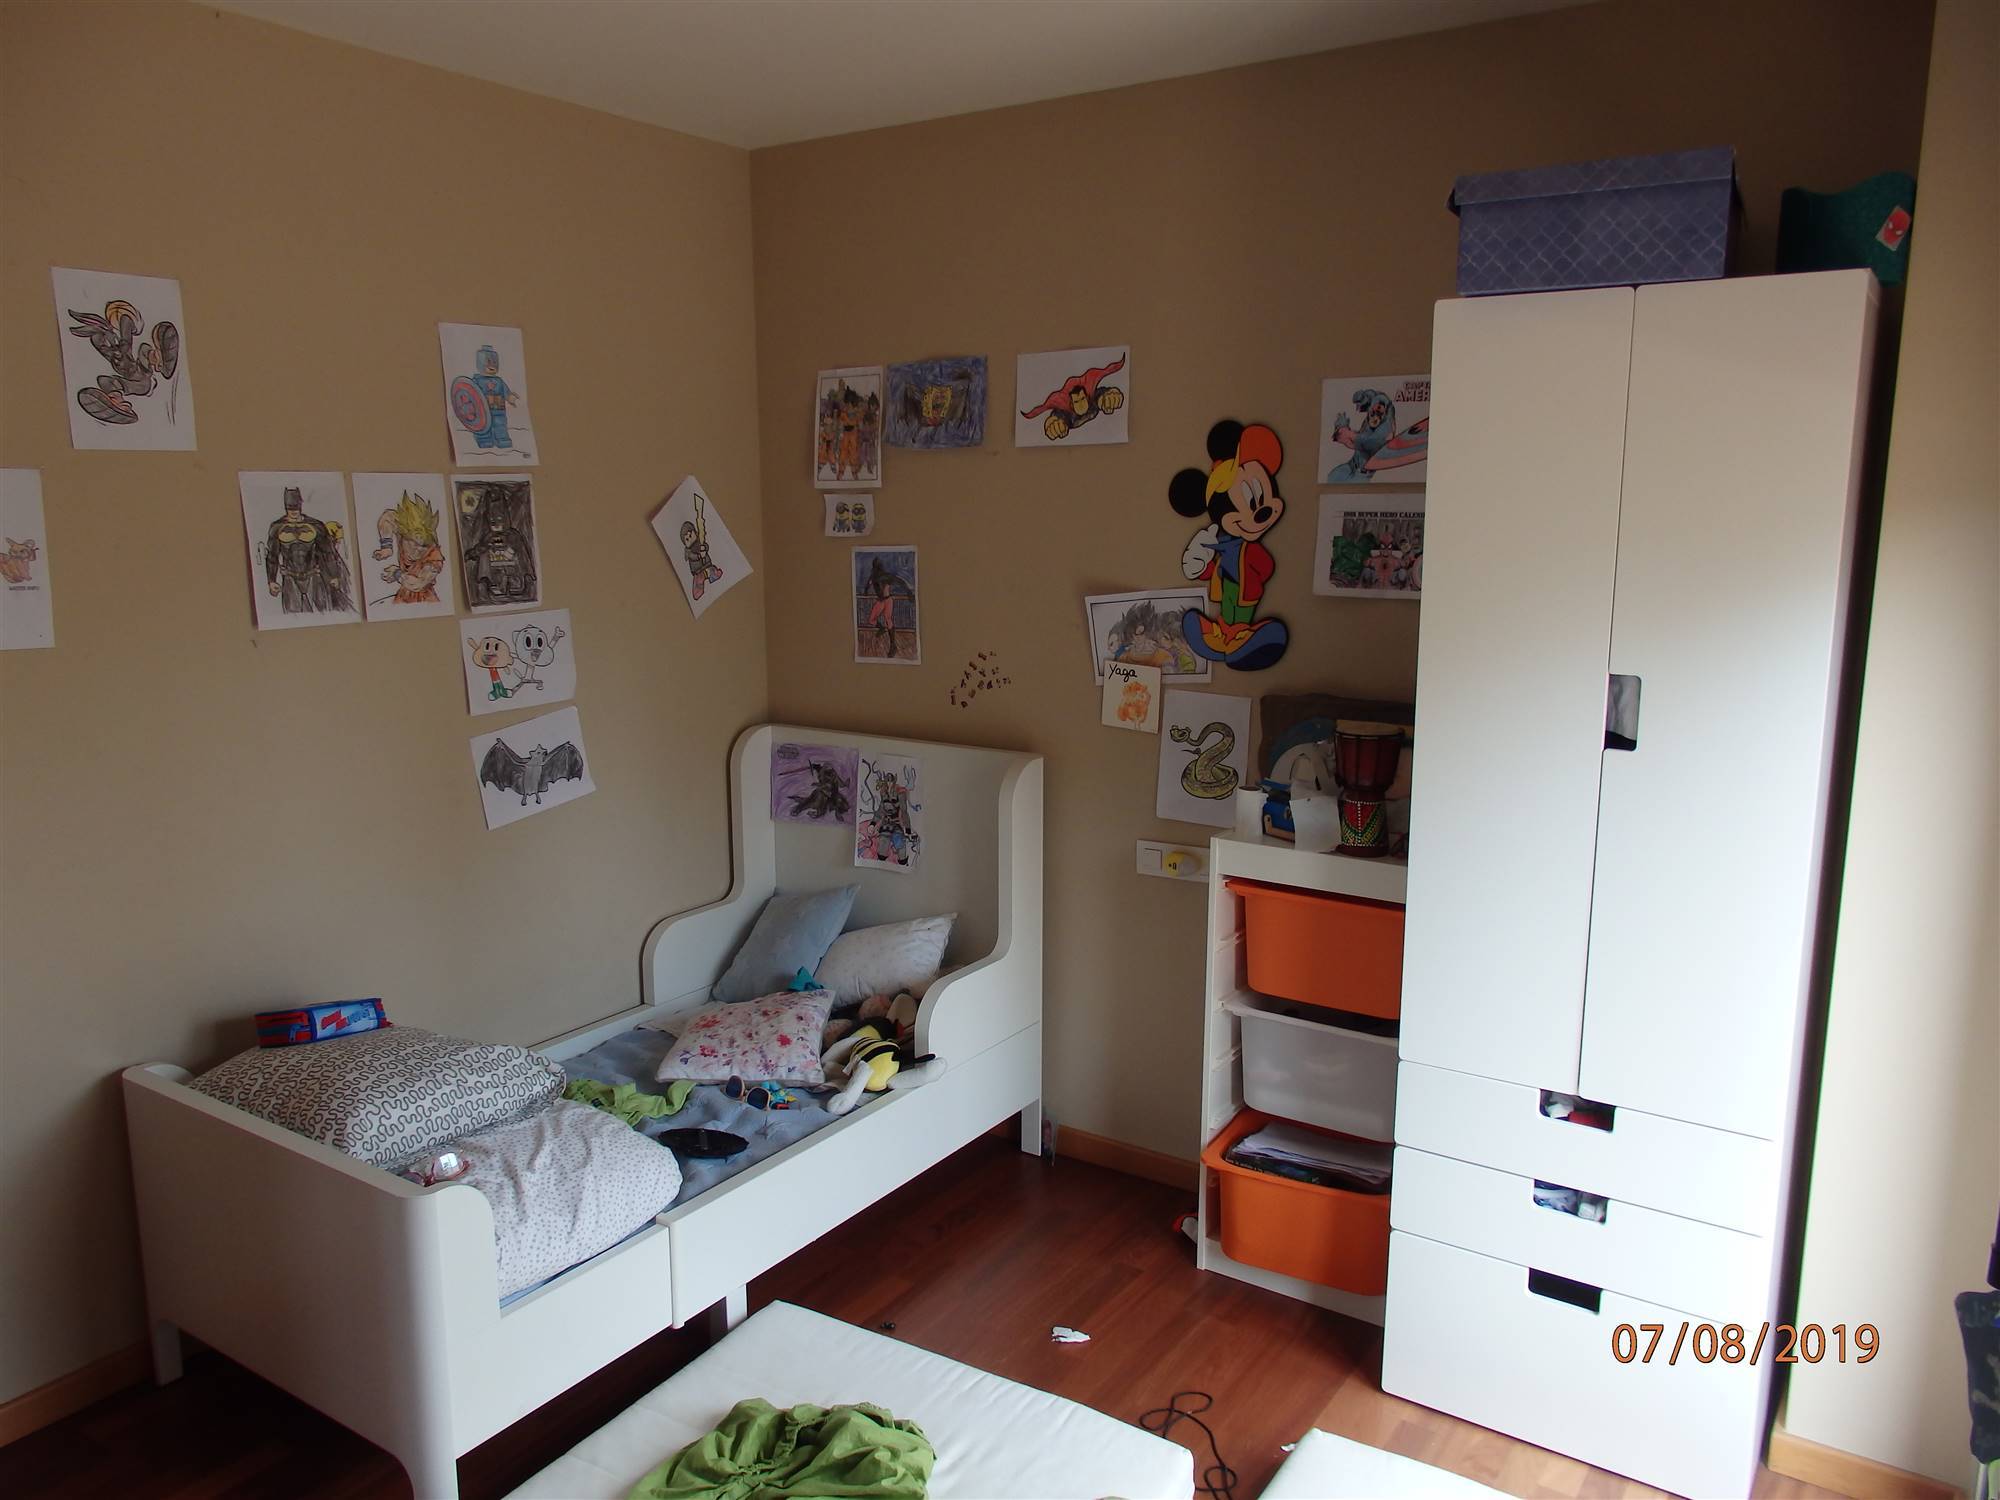 Habitación infantil antes de la reforma de Pia Capdevila en Calafell. 